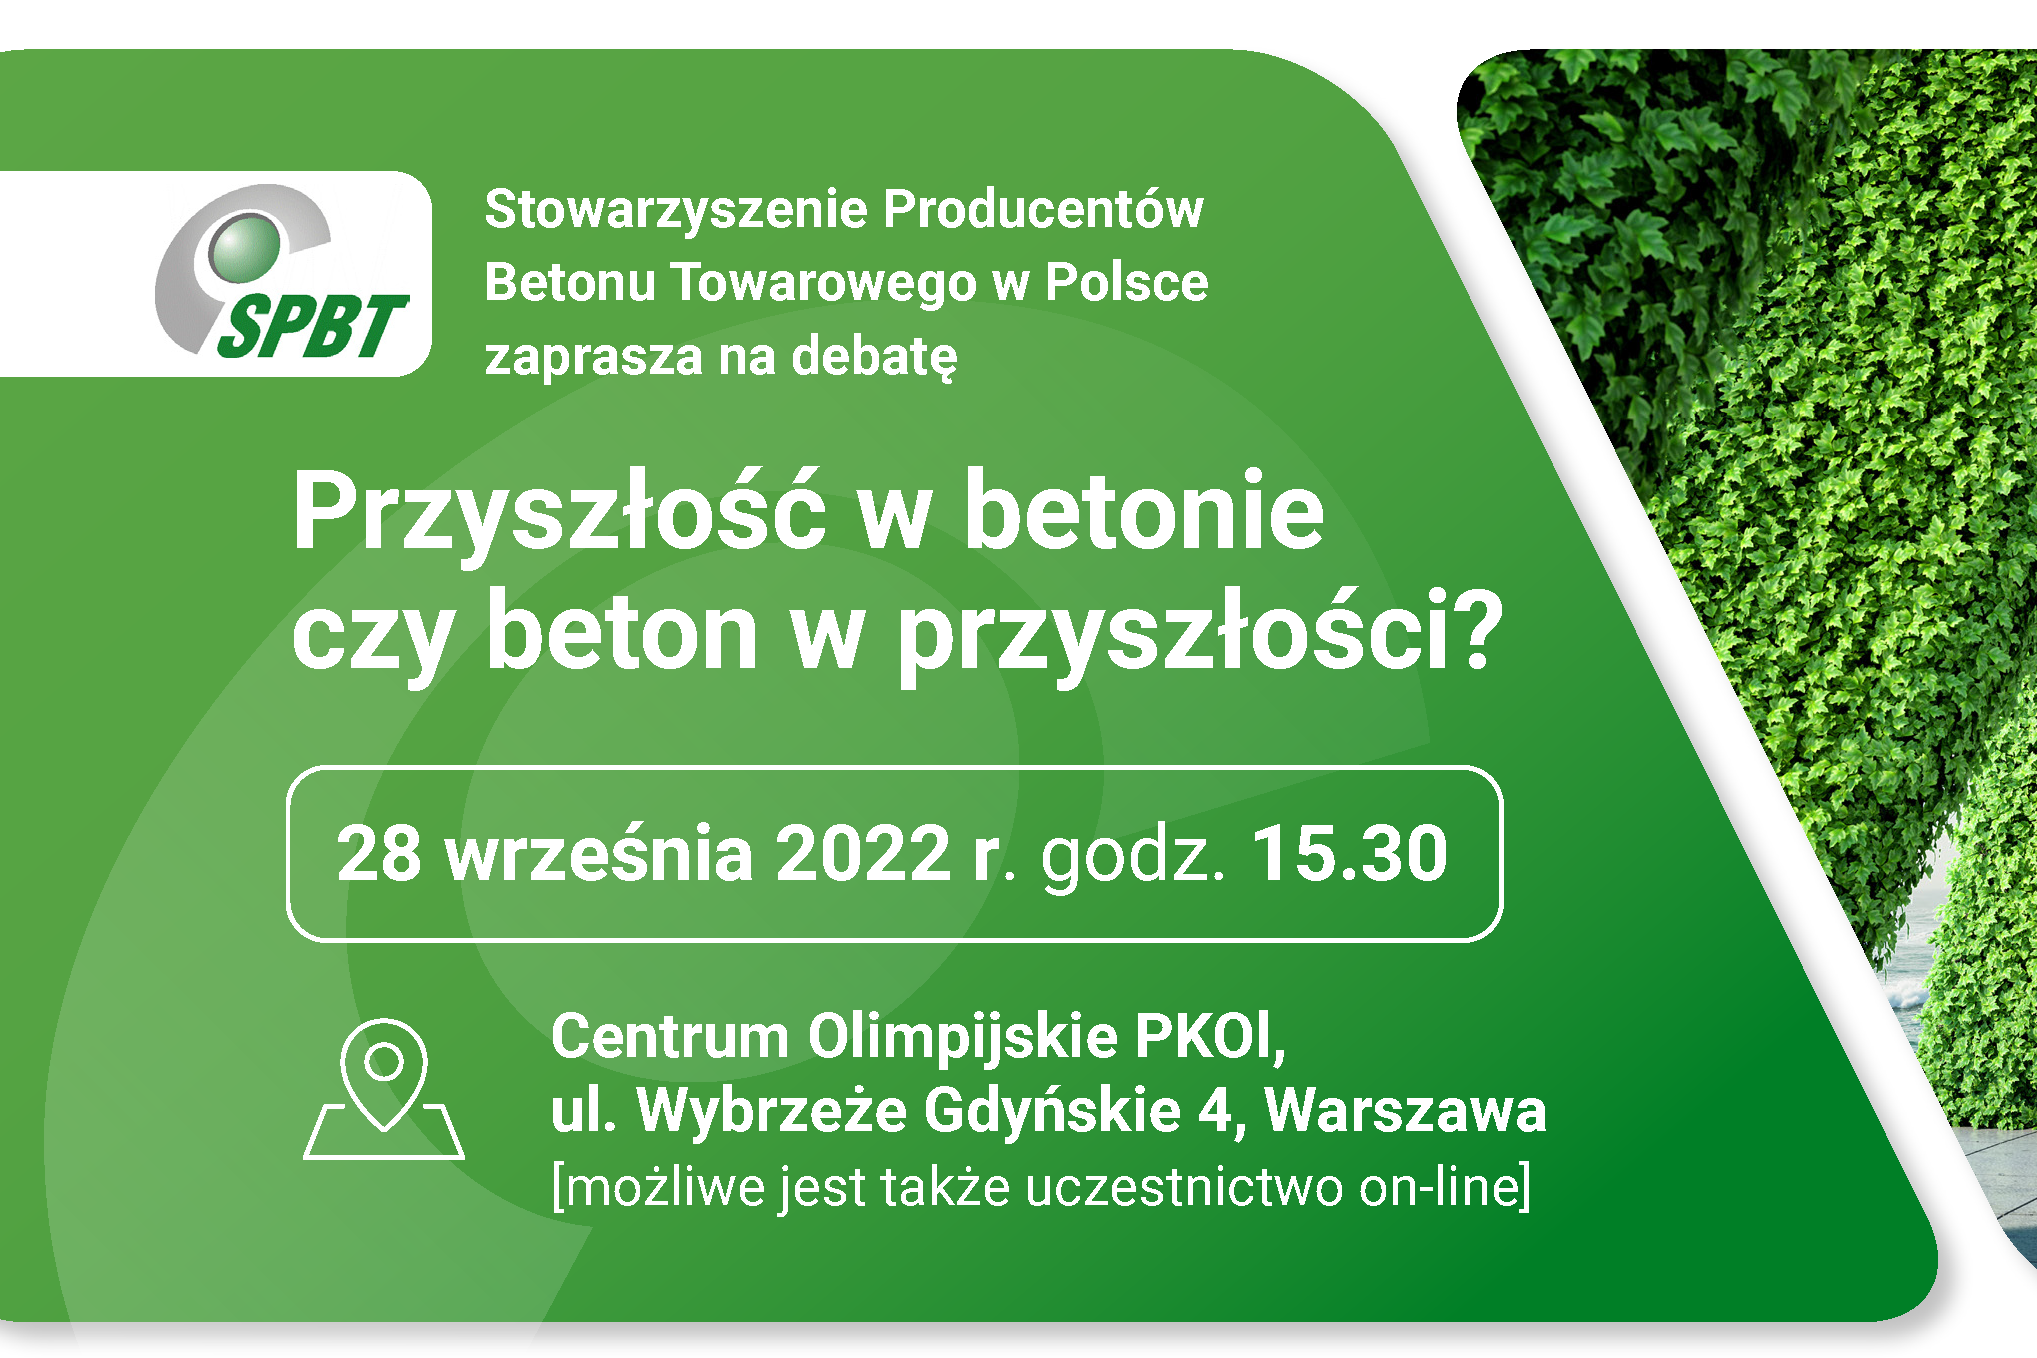 Stowarzyszenie Producentów Betonu Towarowego w Polsce zaprasza na debatę pod hasłem „Przyszłość w betonie czy beton w przyszłości?”